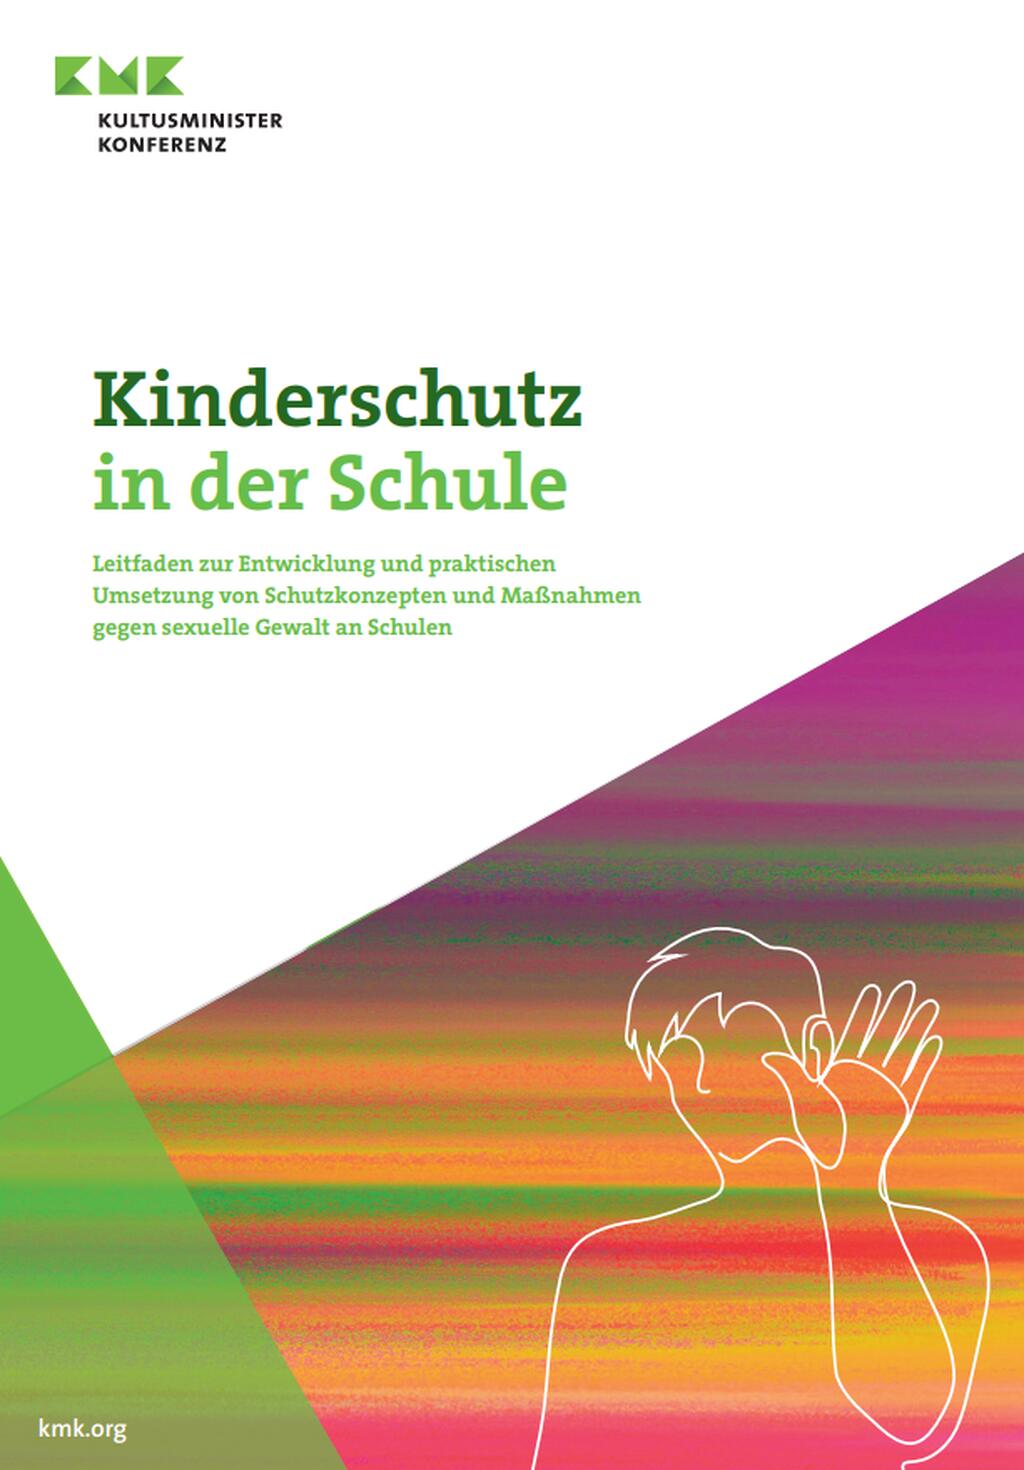 Darstellung des Titelbilds des Leitfadens "Kinderschutz in der Schule".